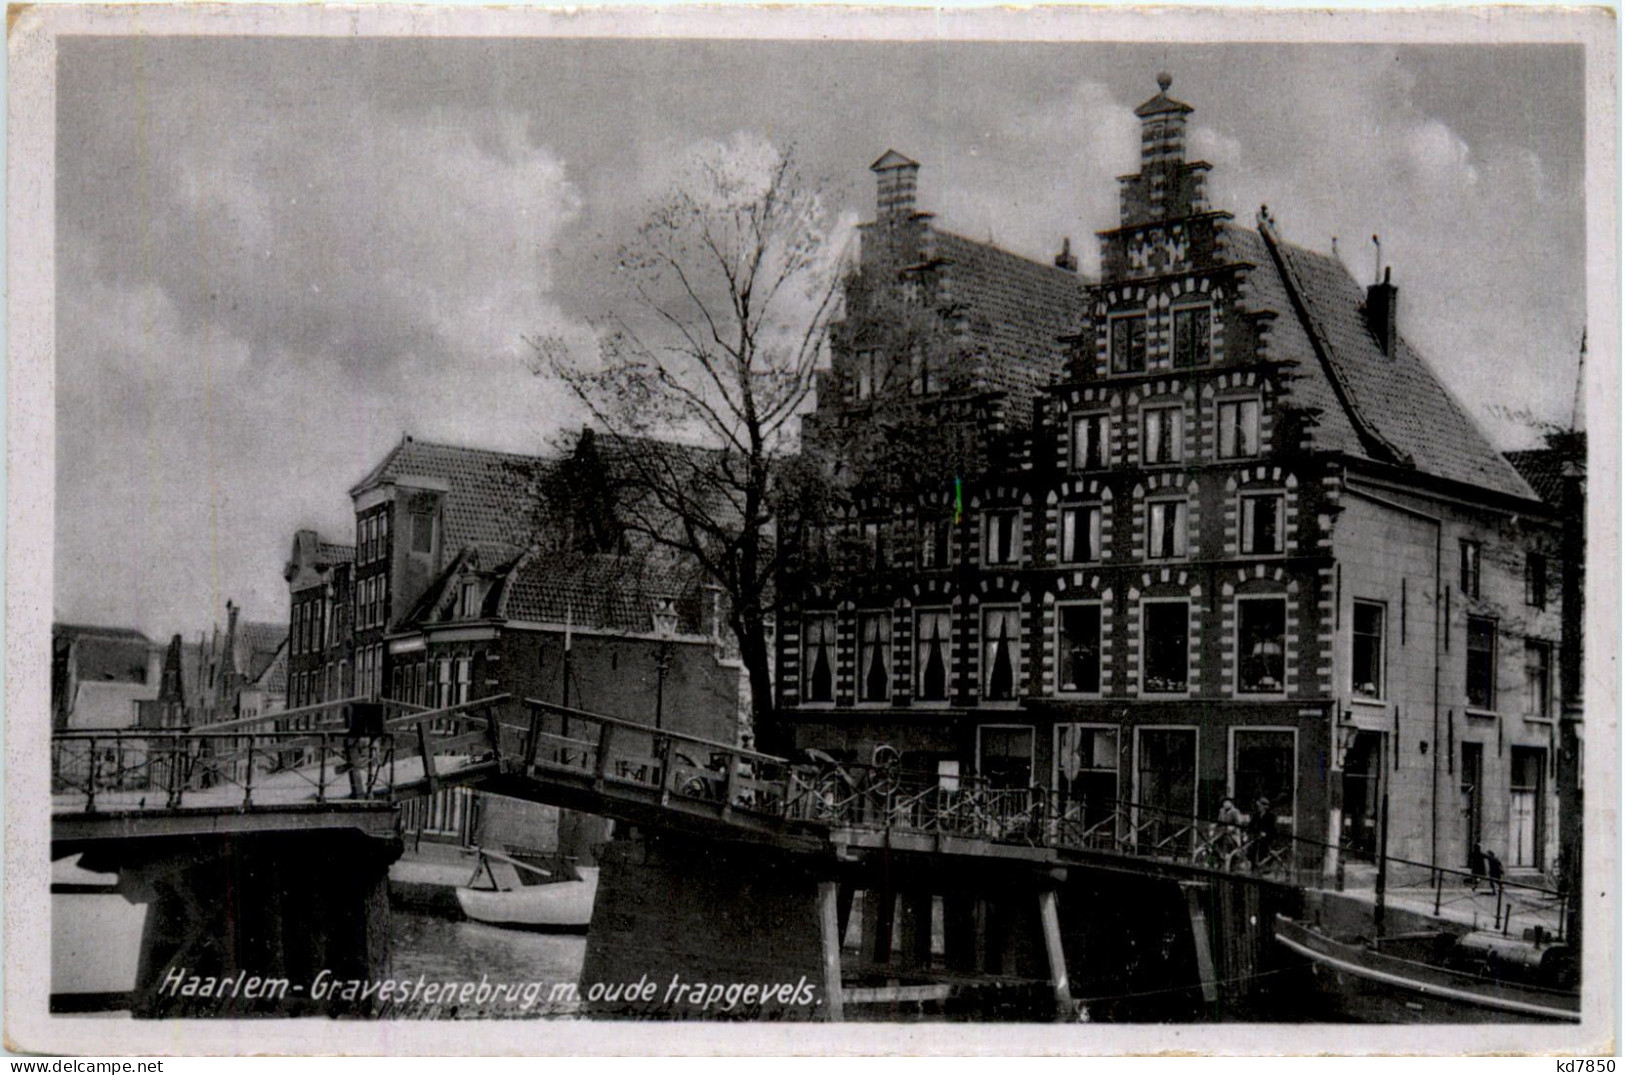 Haarlem-Gravestenebrug - Haarlem